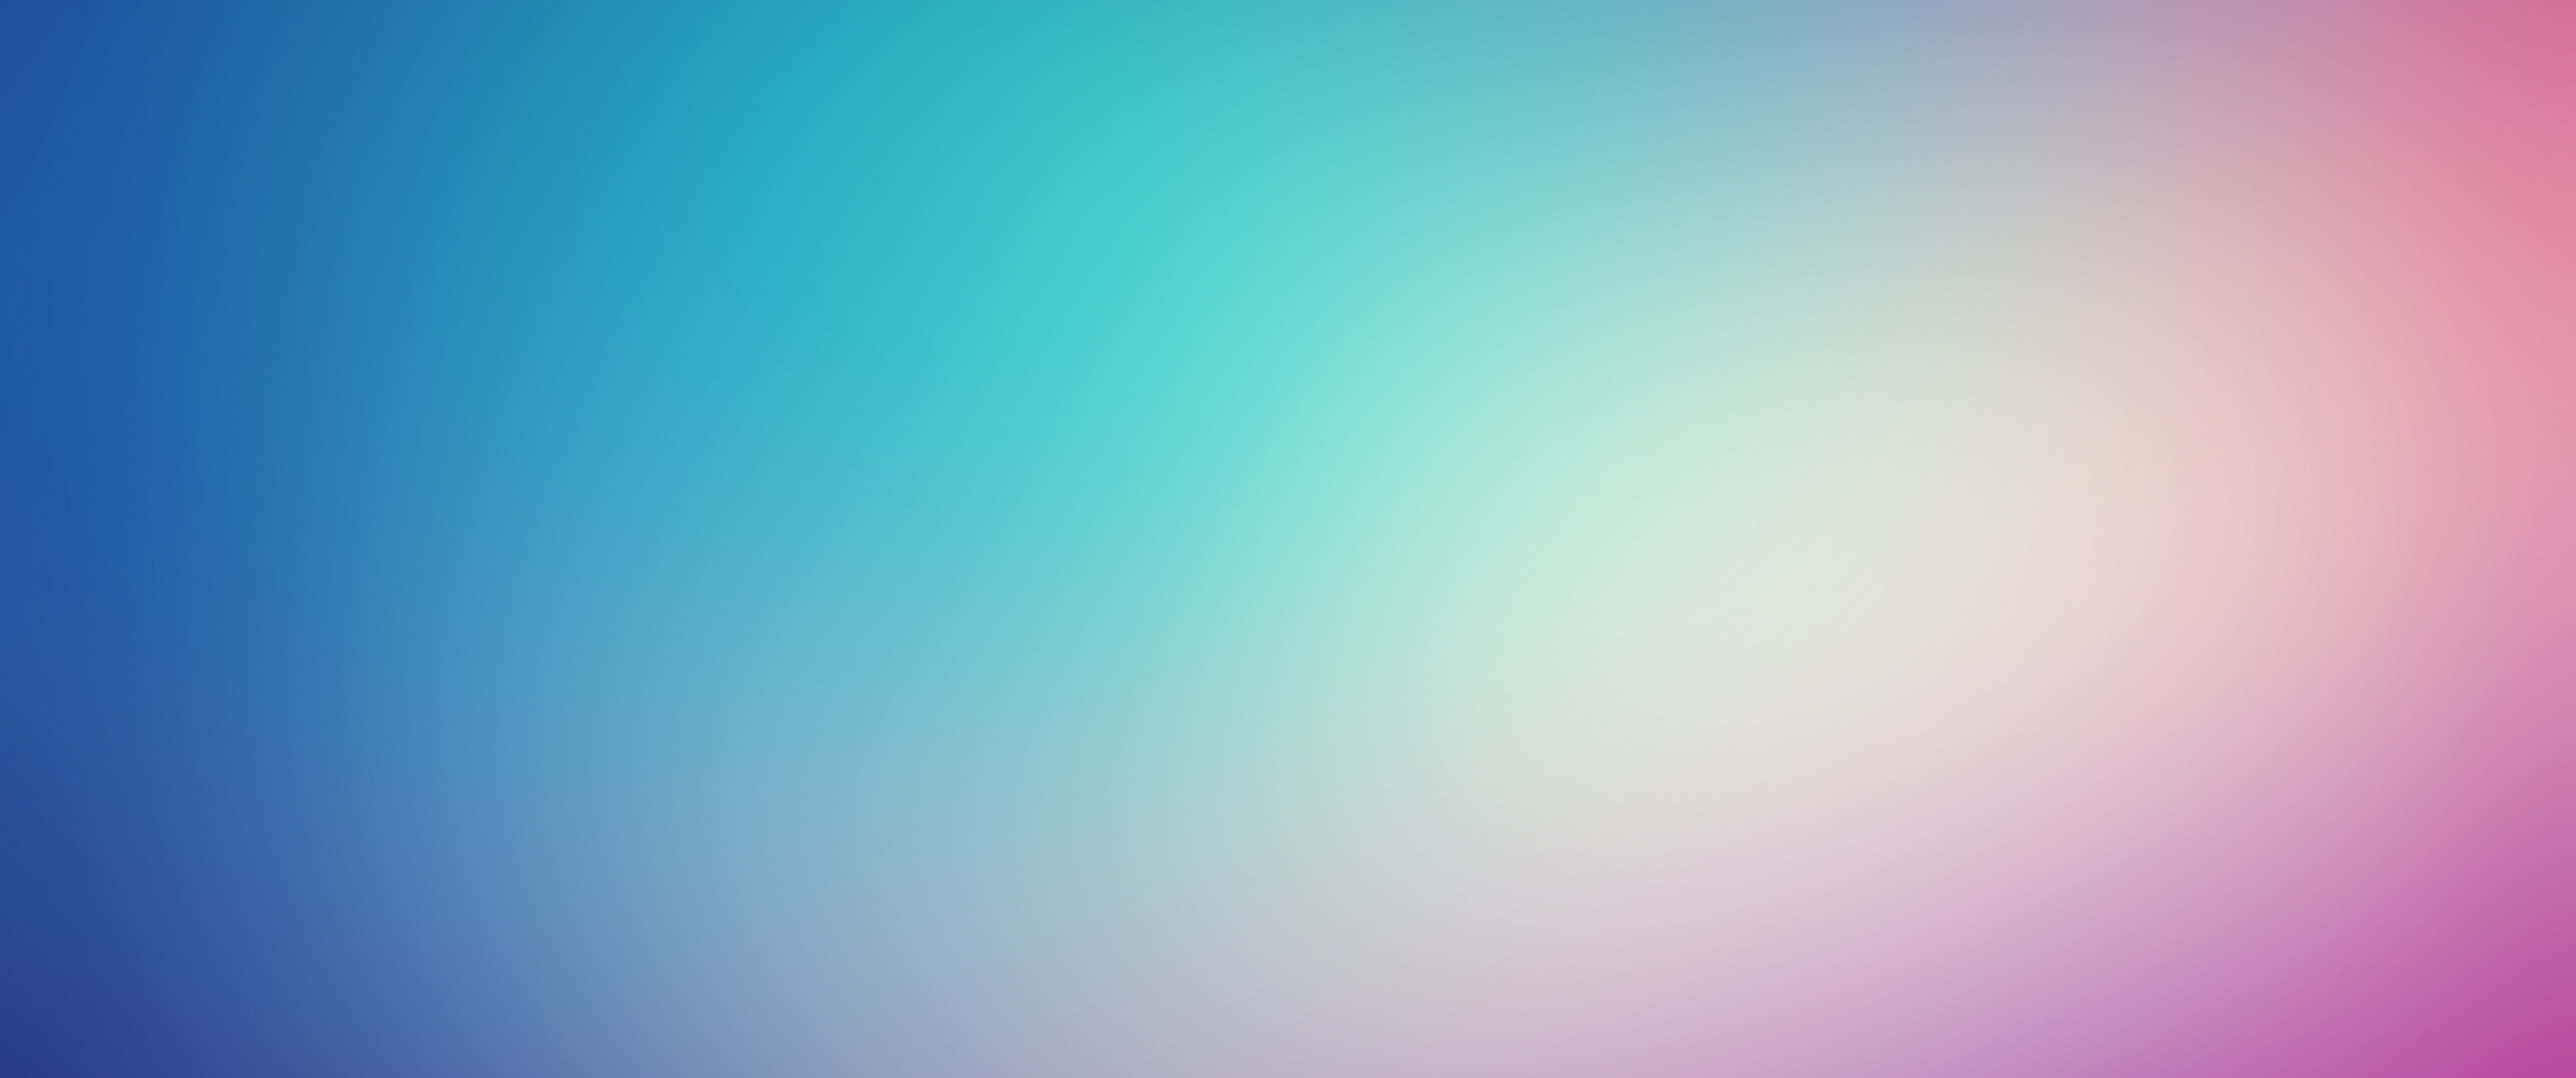 Colorful Wallpaper 4K, Blue, Pink, 5K